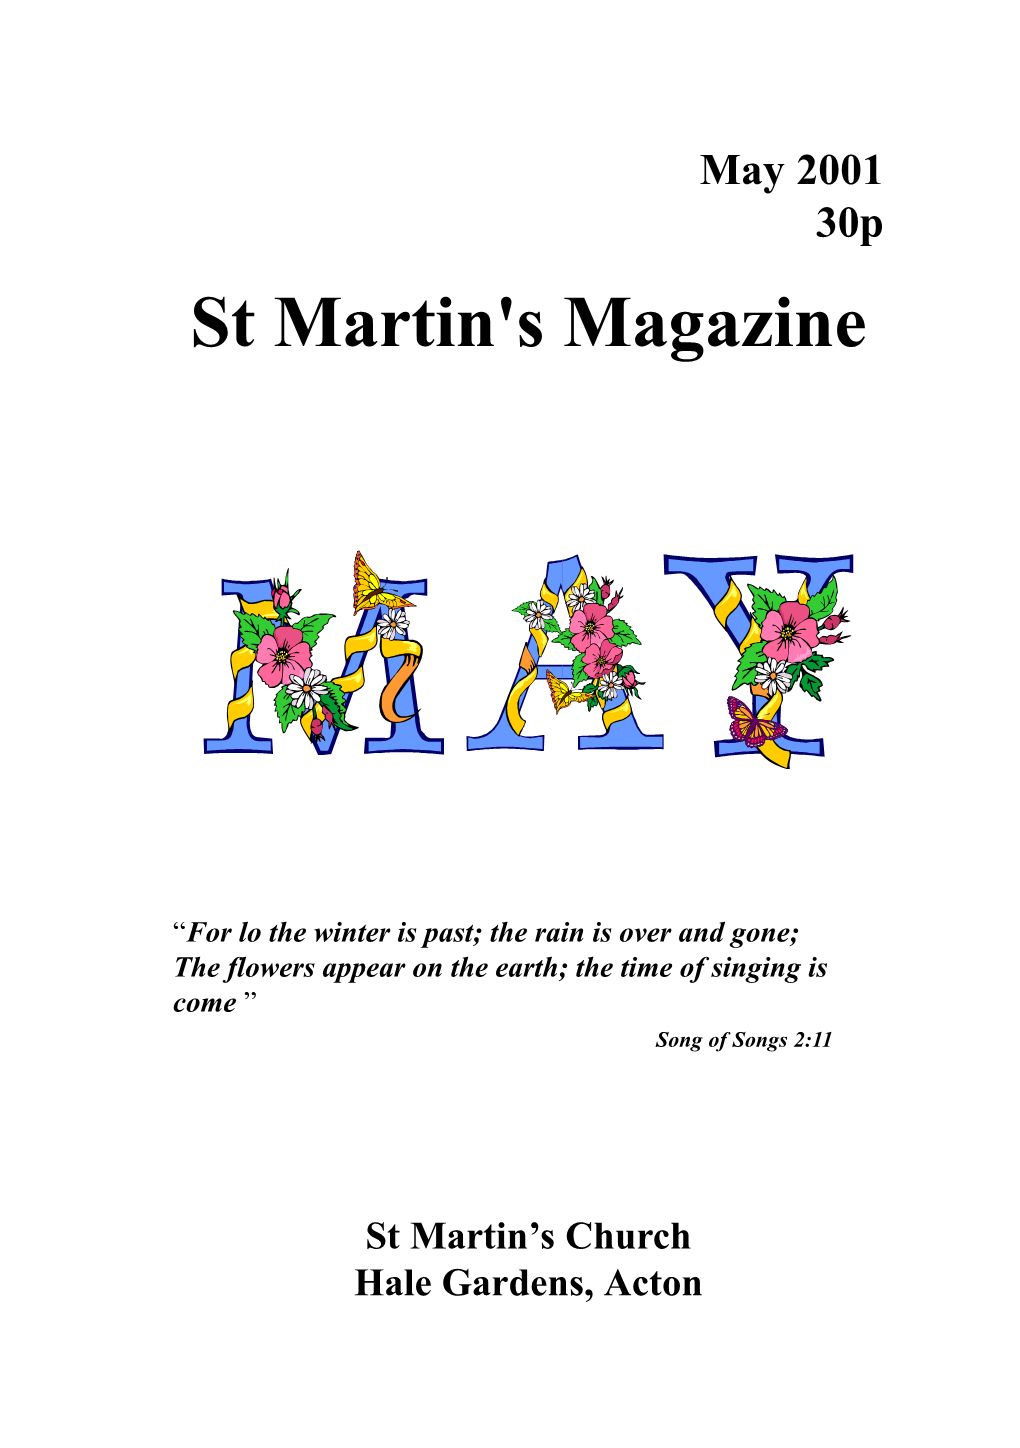 St Martin's Magazine